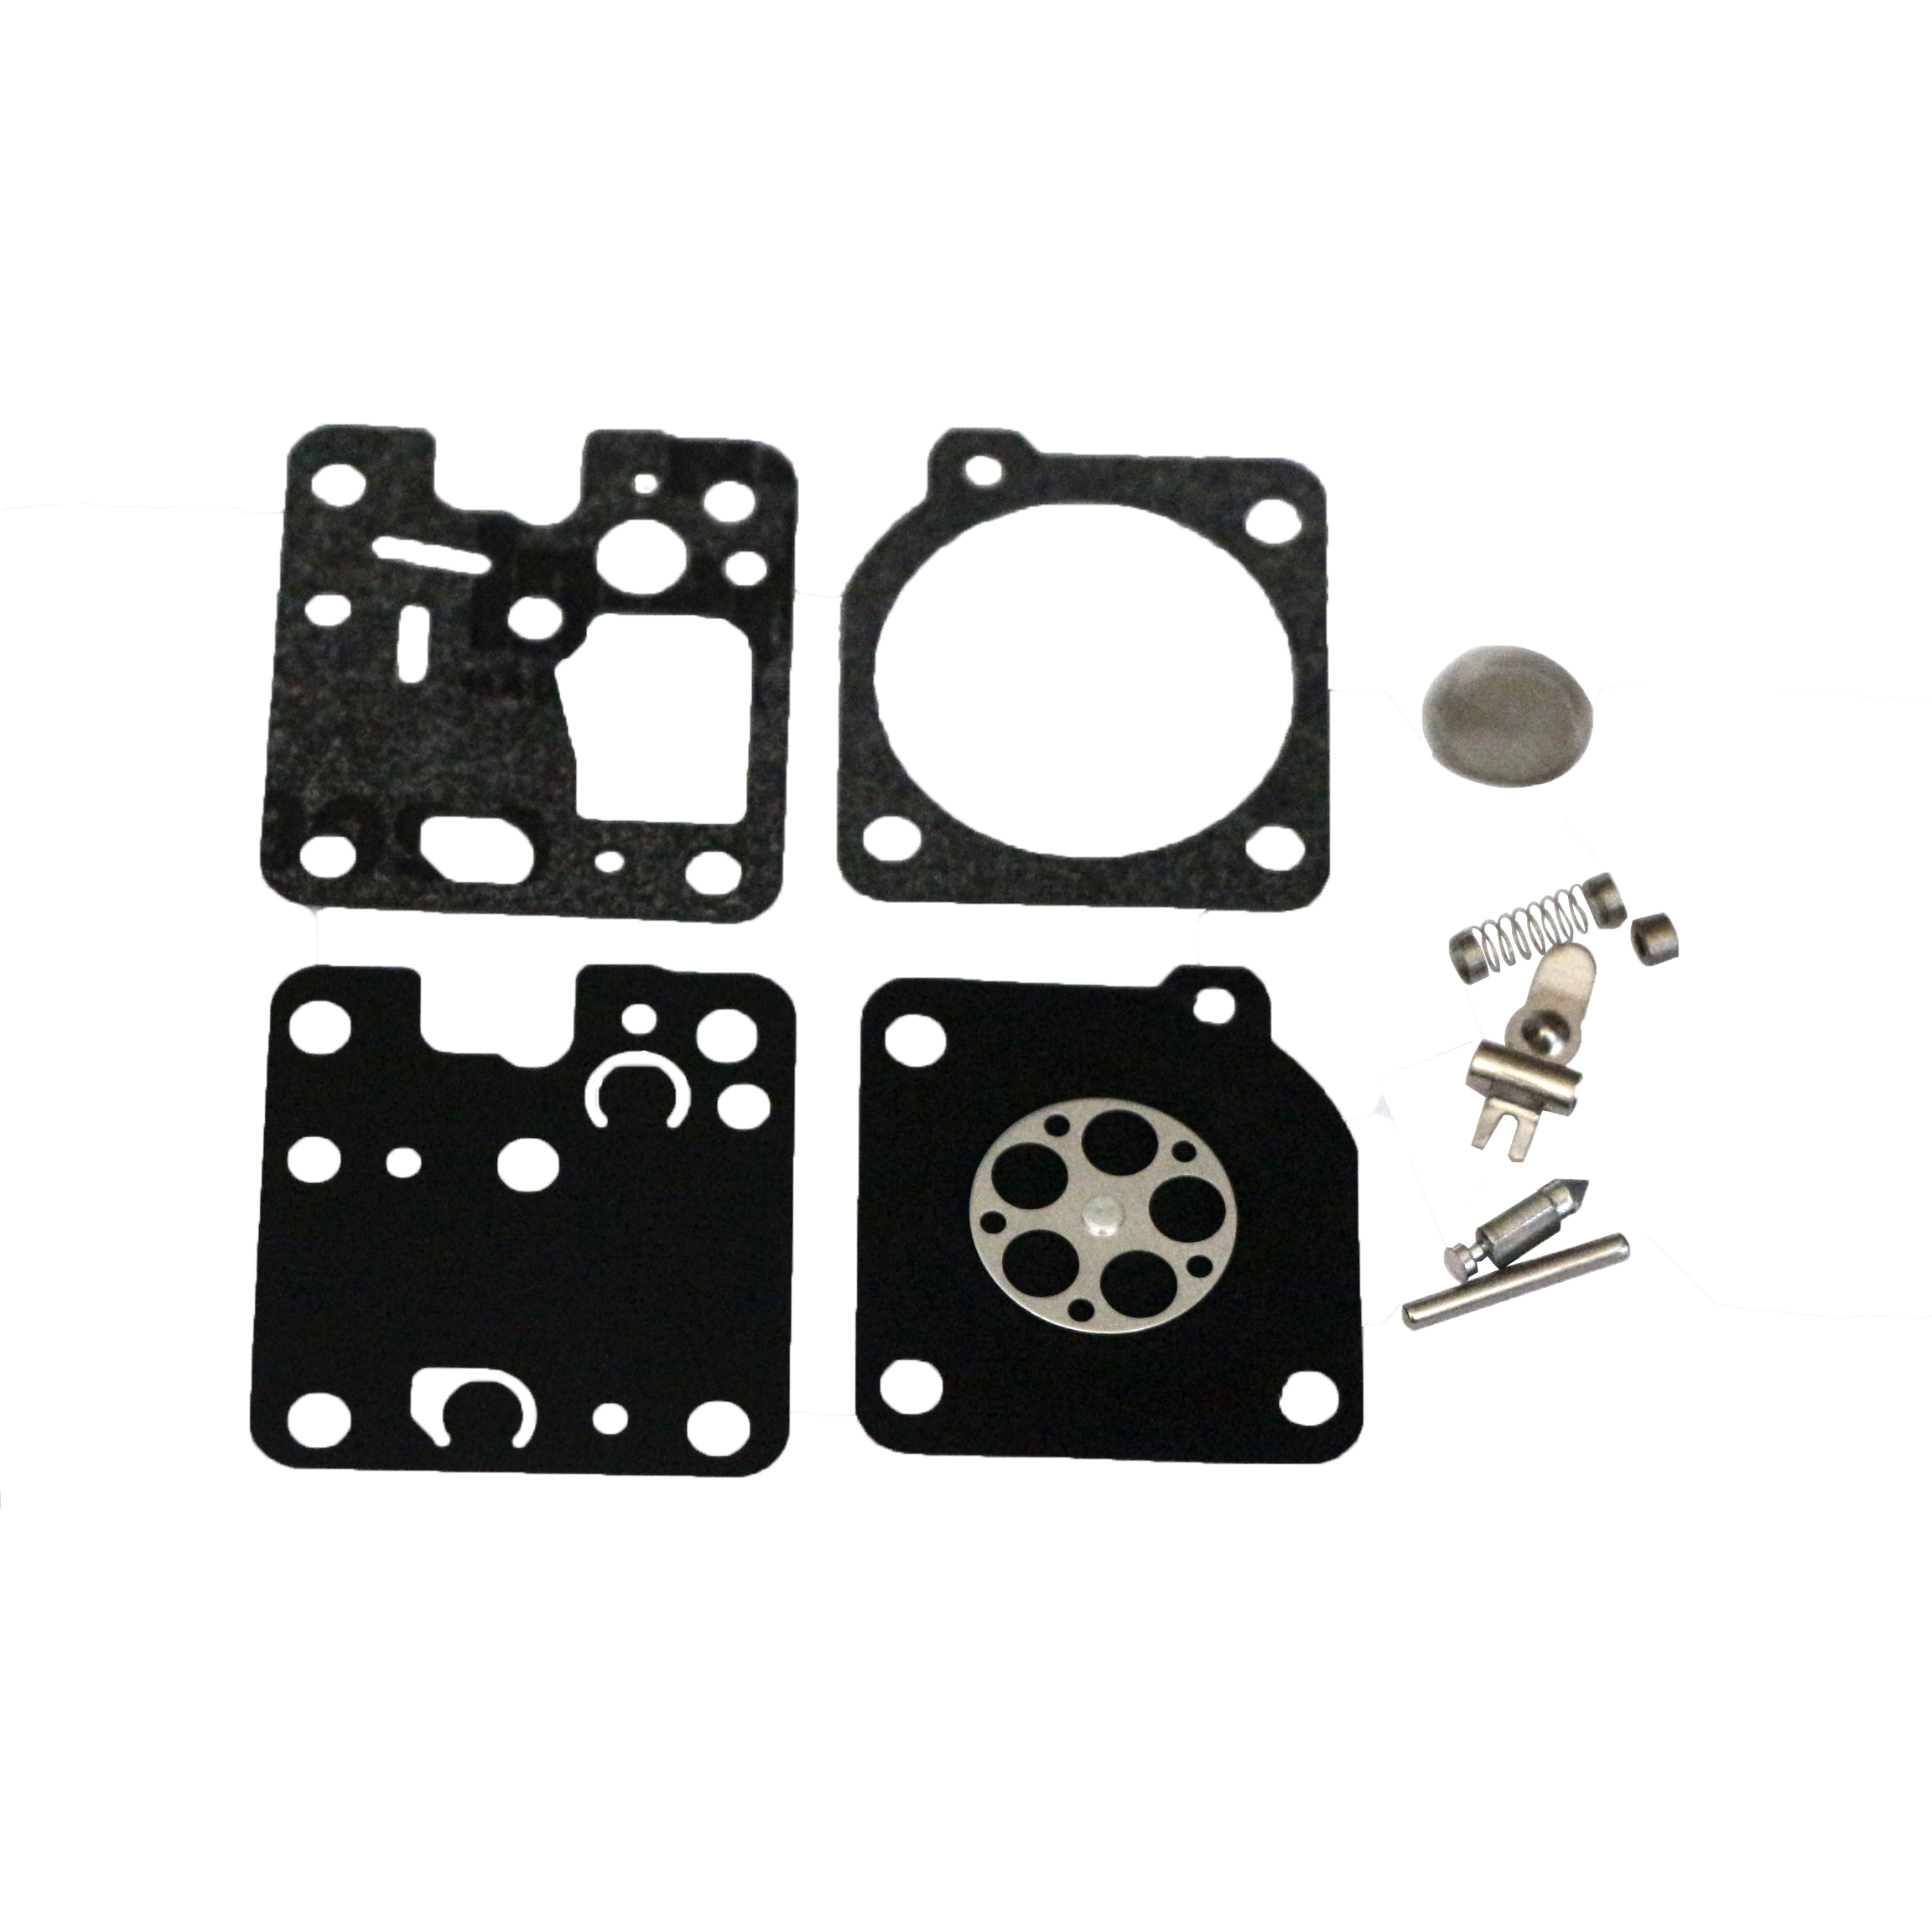 Details about   Carburetor Repair/Rebuild Kit Replaces ZAMA RB-123 for Echo SRM230 SRM225 GT-225 